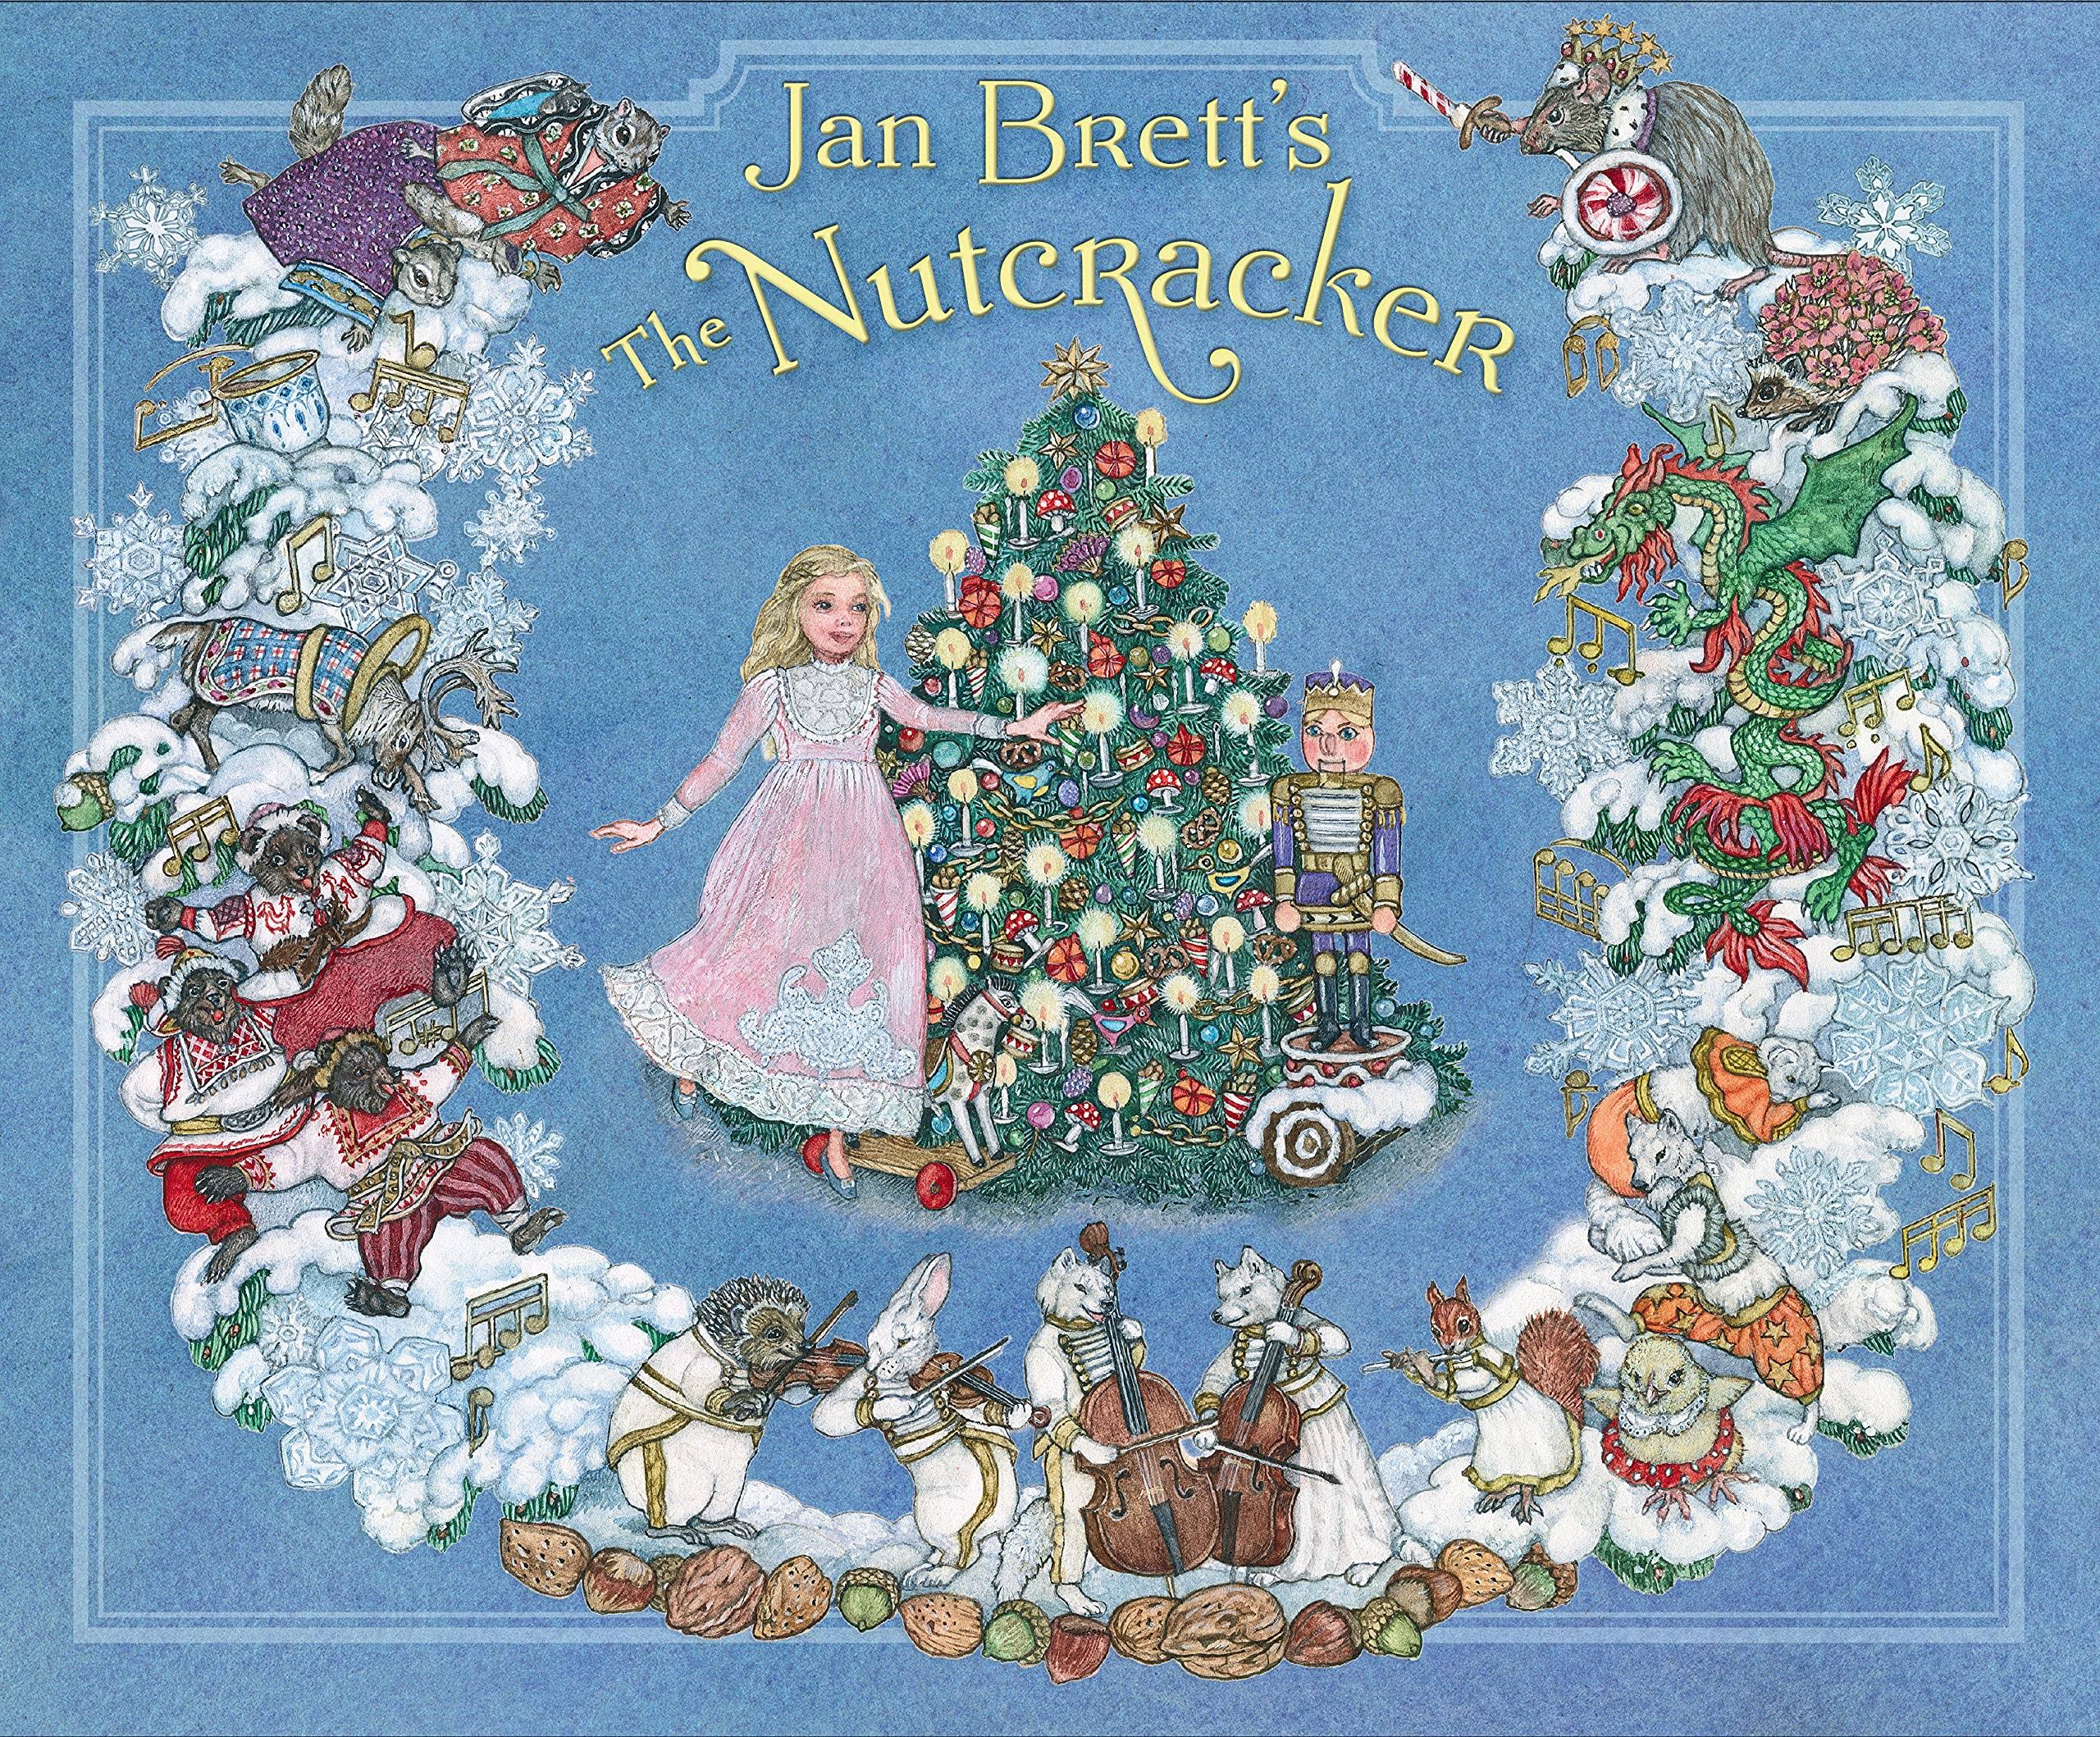 Jan Brett's The Nutcracker by Jan Brett